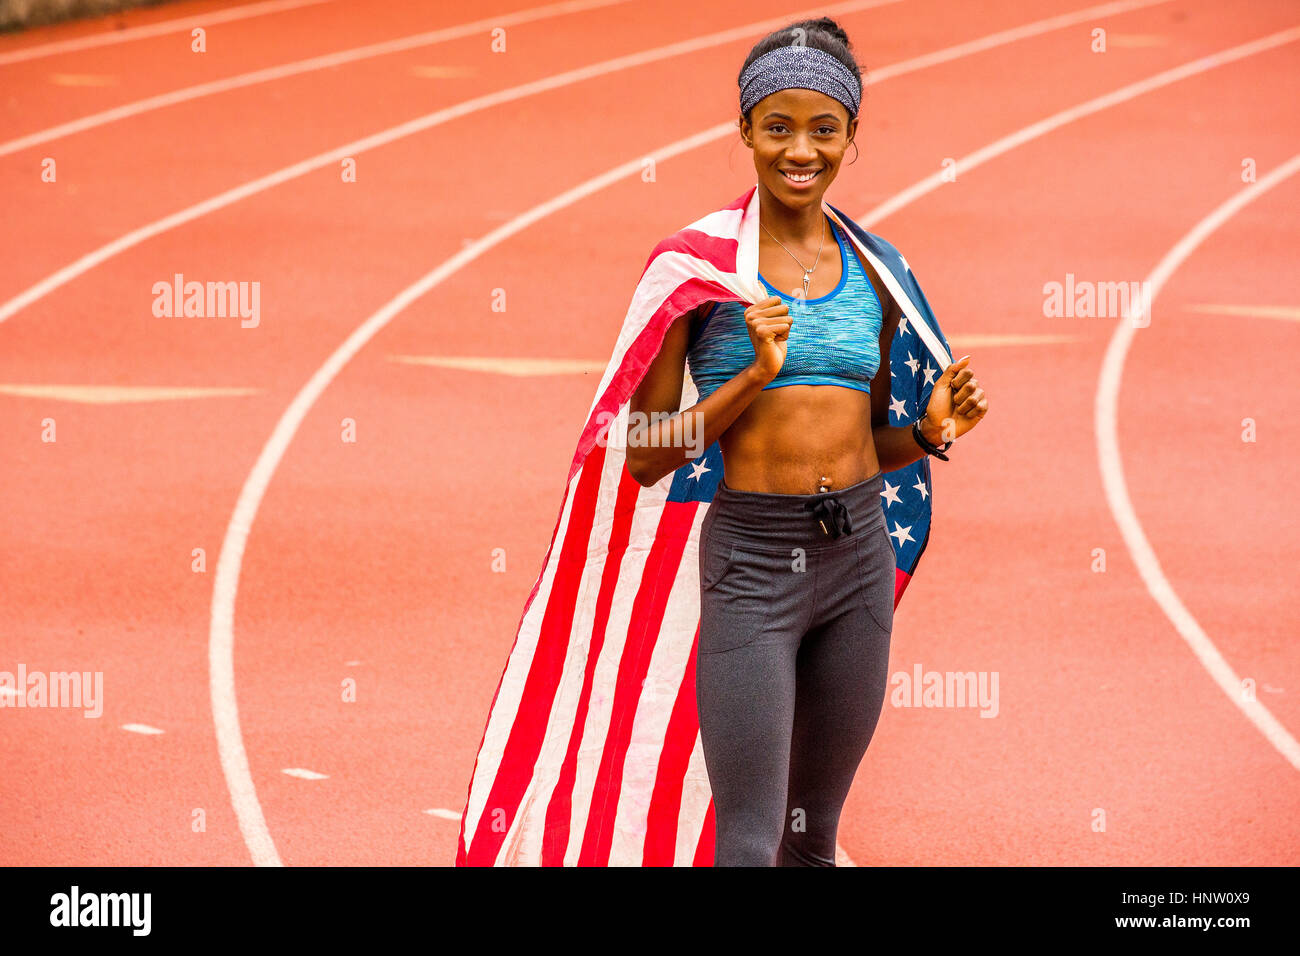 Smiling Black sportif posant avec le drapeau américain sur la voie Banque D'Images